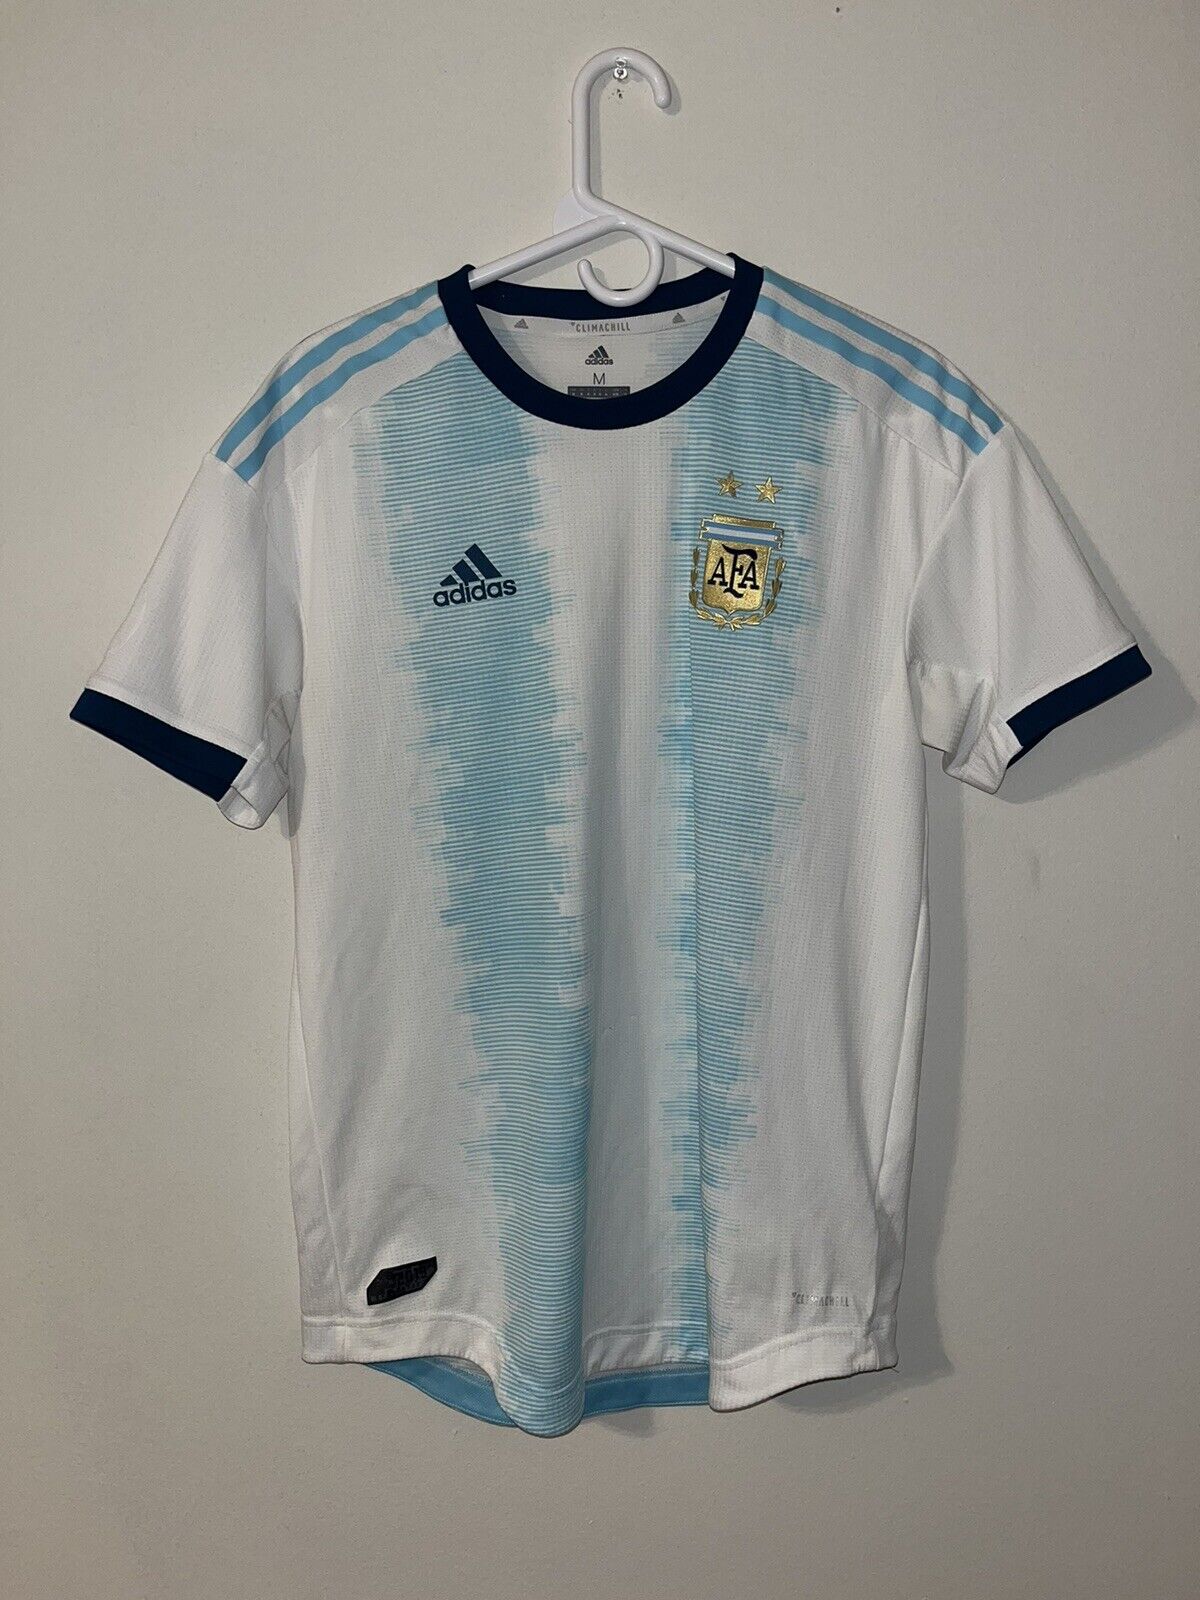 Adidas Climachill Argentina AFA Soccer Mens Medium 2019 | eBay